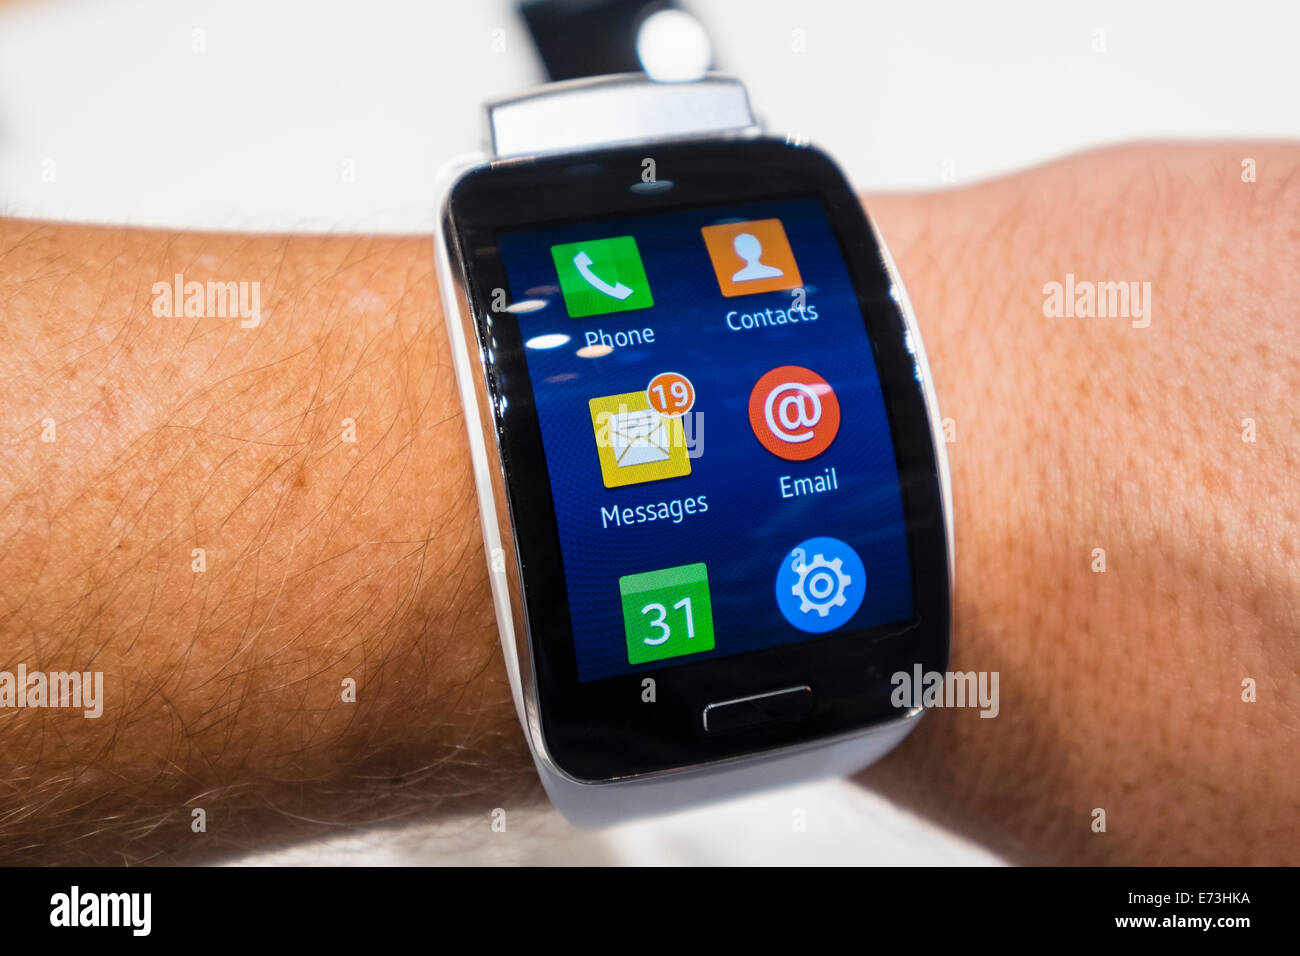 Berlin, Deutschland. 5. September 2014. Samsung Gear S smart-Uhr auf dem Display auf der IFA 2014 Verbraucherelektroniksschau in Berlin-Deutschland-Credit: Iain Masterton/Alamy Live News Stockfoto